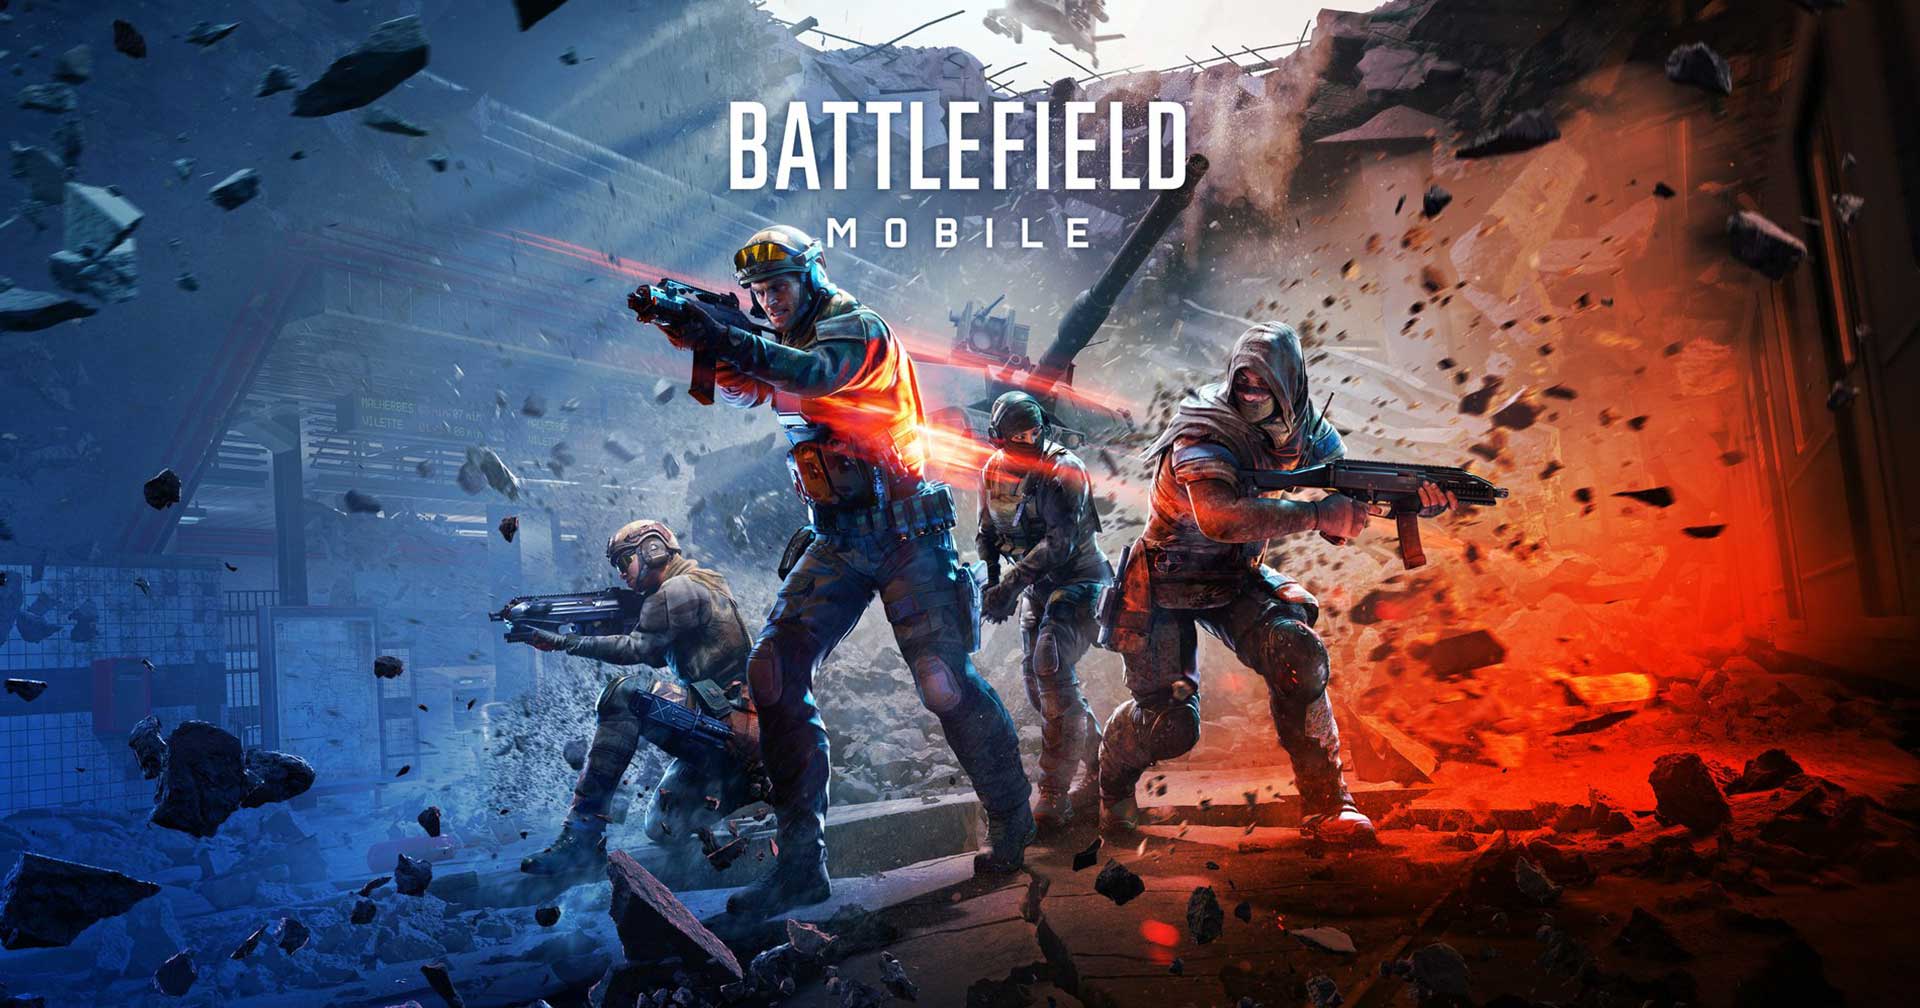 EA ประกาศยกเลิก Battlefield Mobile พร้อมบอกใบ้โปรเจกต์ใหม่